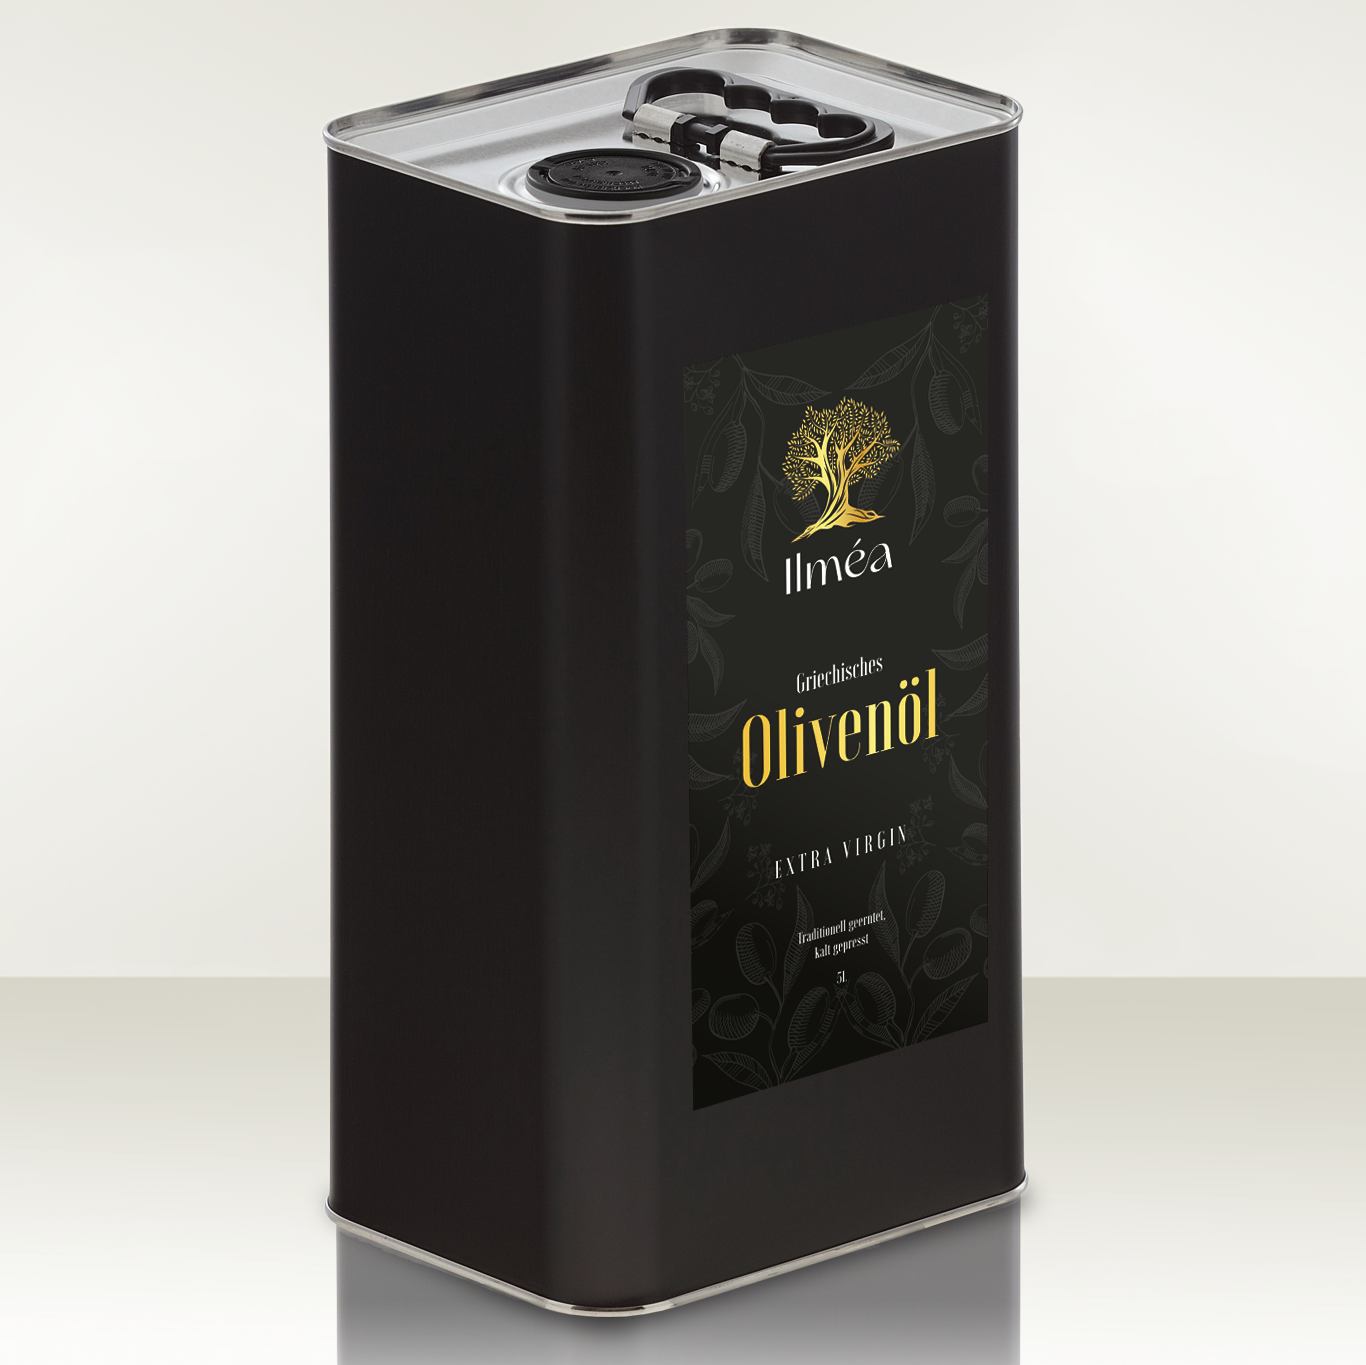 Olivenöl 5 Liter Extra Nativ aus Griechenland von Ilmea Olivenöl.